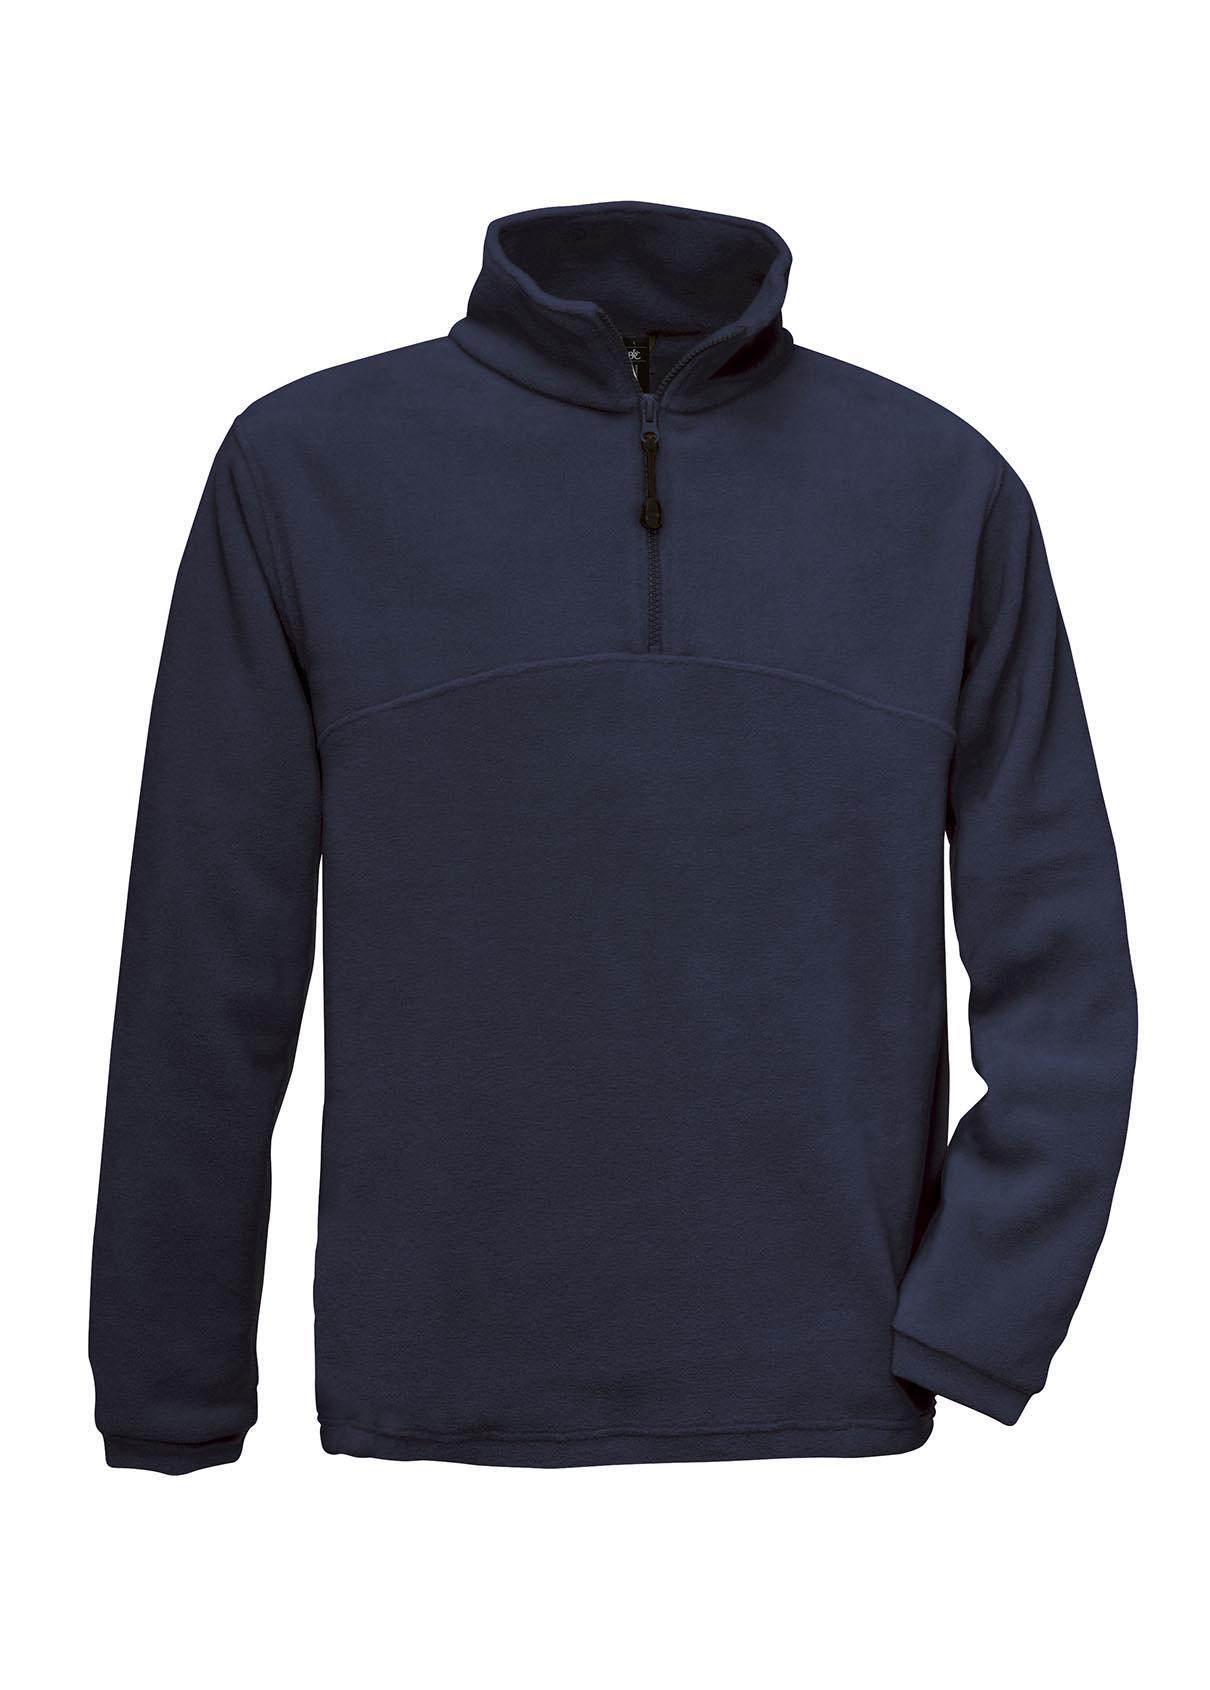 Fleece trui donkerblauw voor mannen te personaliseren